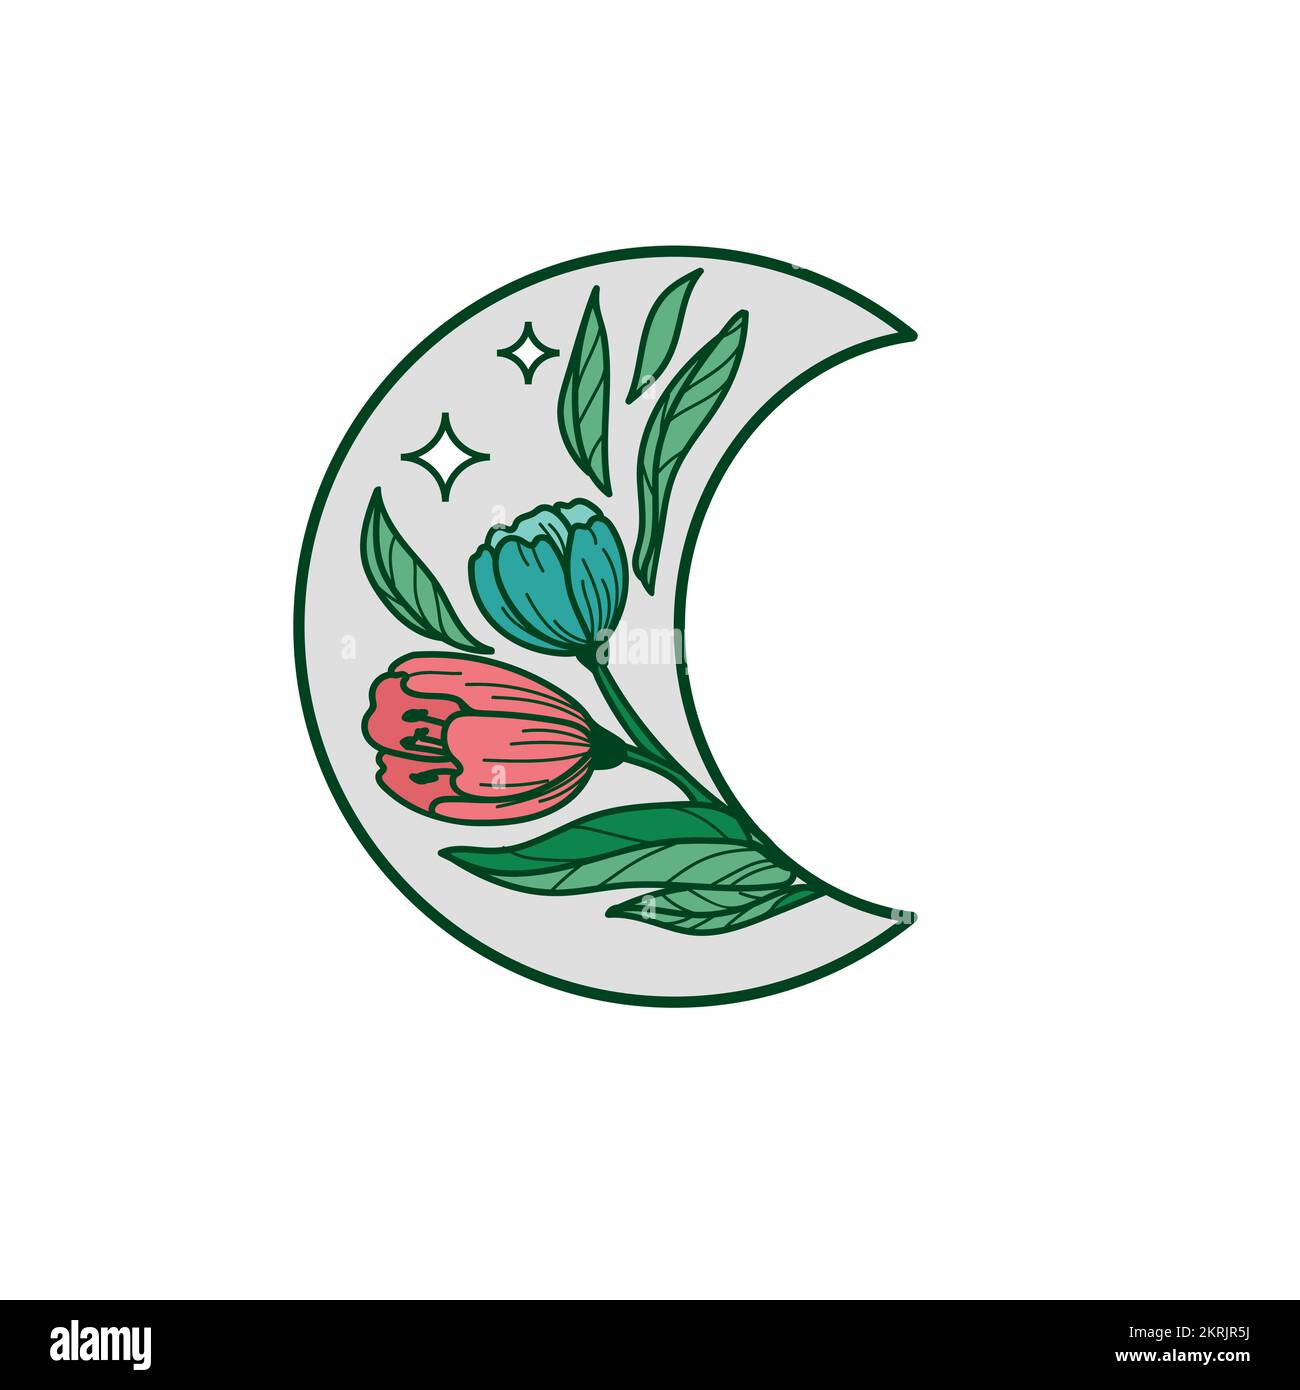 Wunderschöne Blume, Blumen, Blumenmotiv, Illustration botanischer Blumen, handgezeichnete, von der Natur inspirierte Logotype-Vorlage Stock Vektor